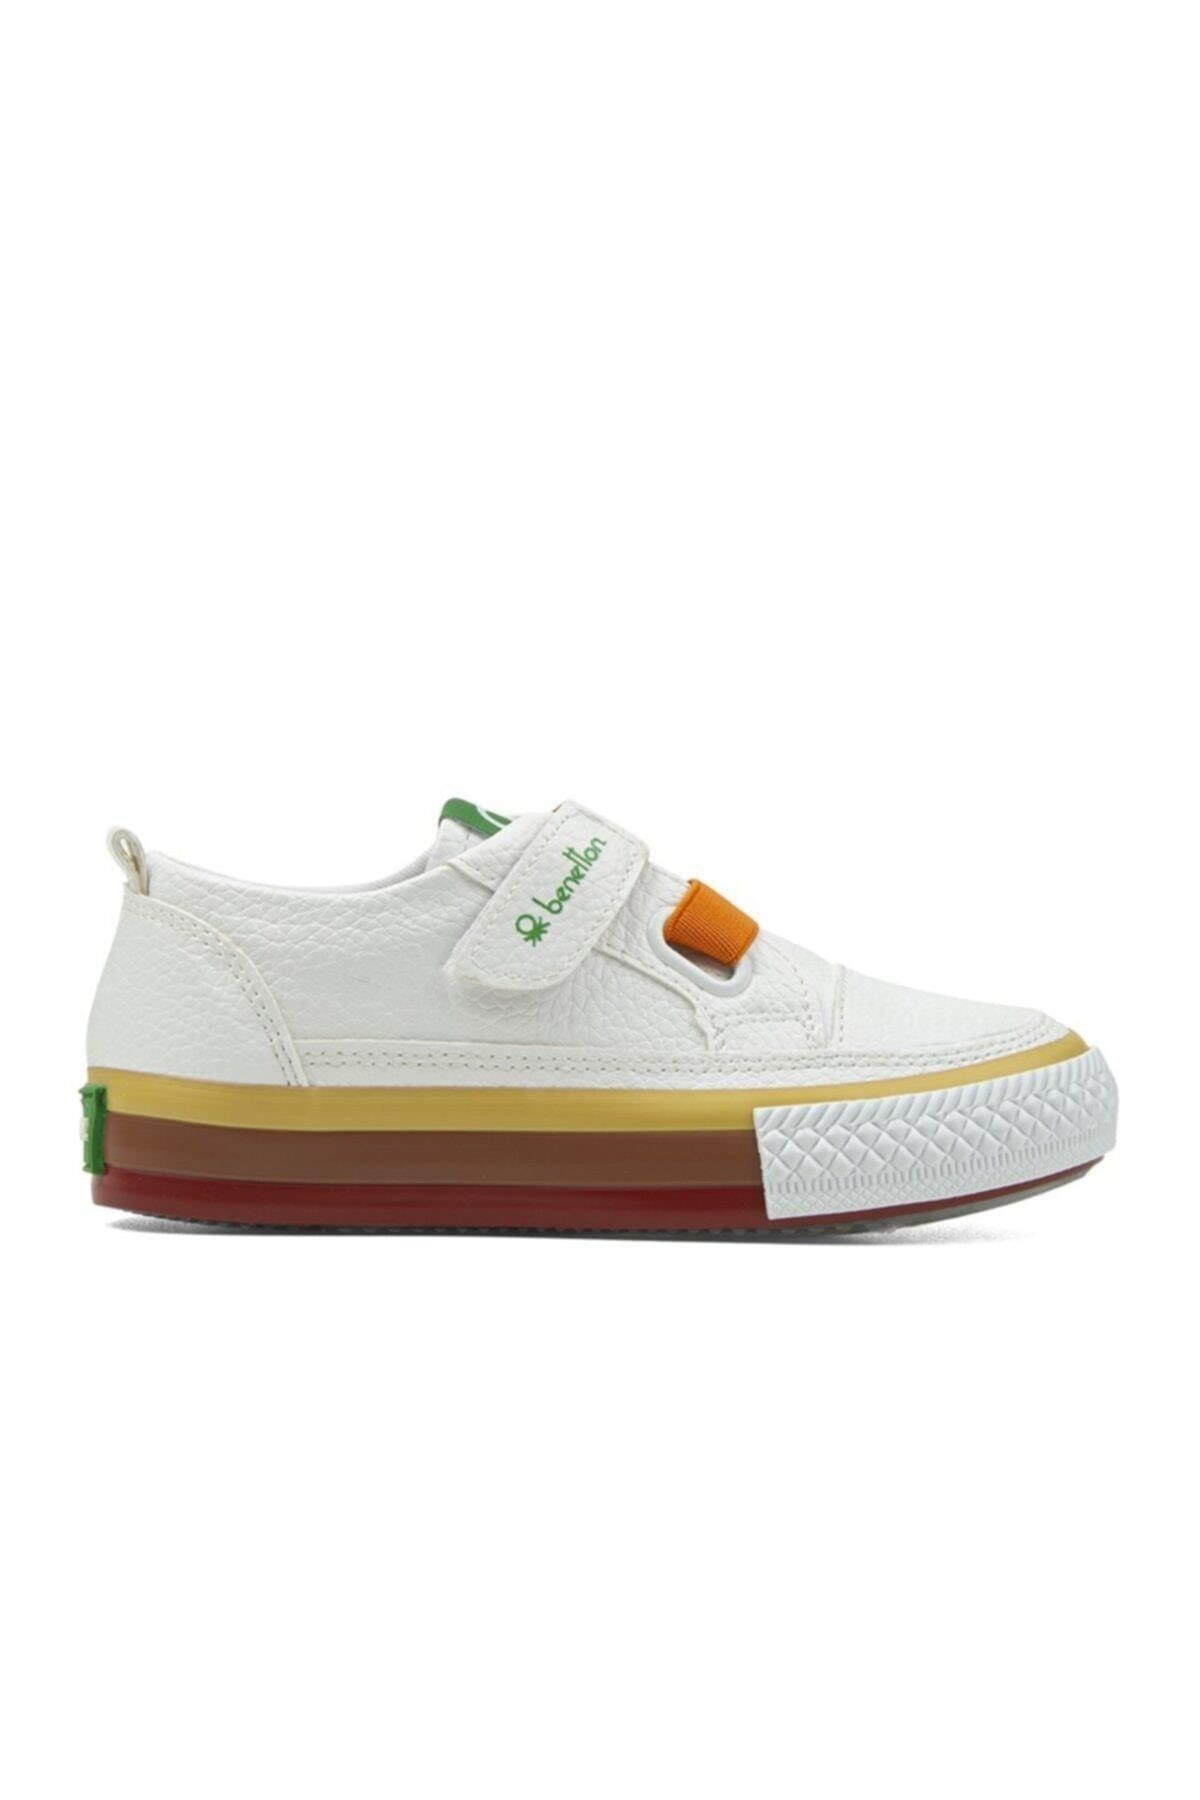 Benetton Beyaz - Çocuk Spor Ayakkabı